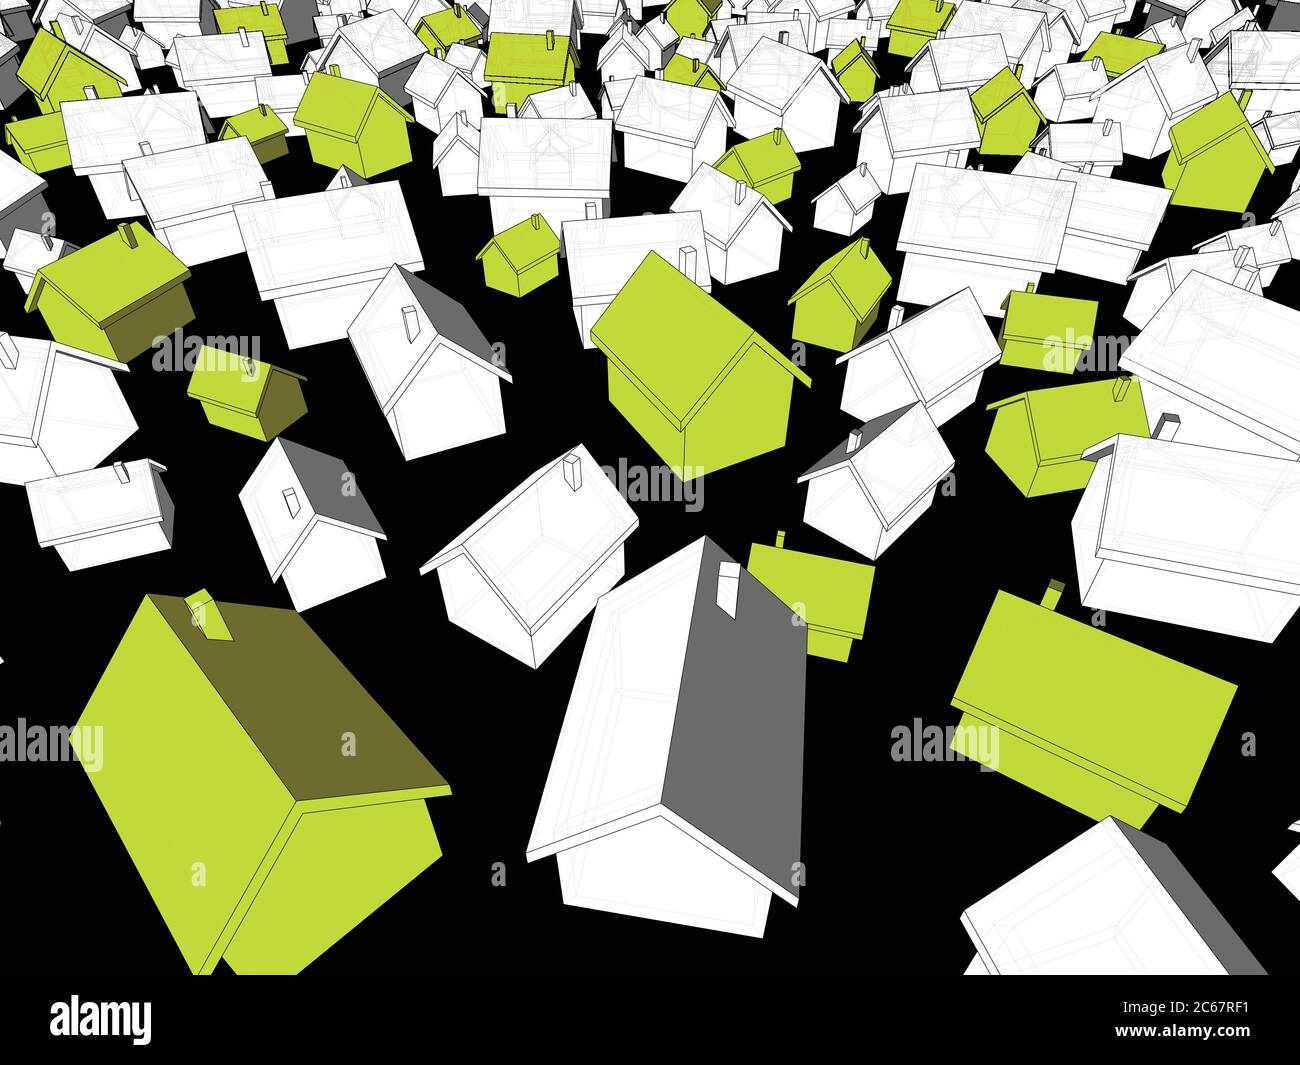 3d-Illustration von vielen chaotisch stehenden einfachen Einfamilienhäusern in verschiedenen Größen mit Schatten und grünen Öko-Häusern, die sich von anderen abhoben Stock Vektor